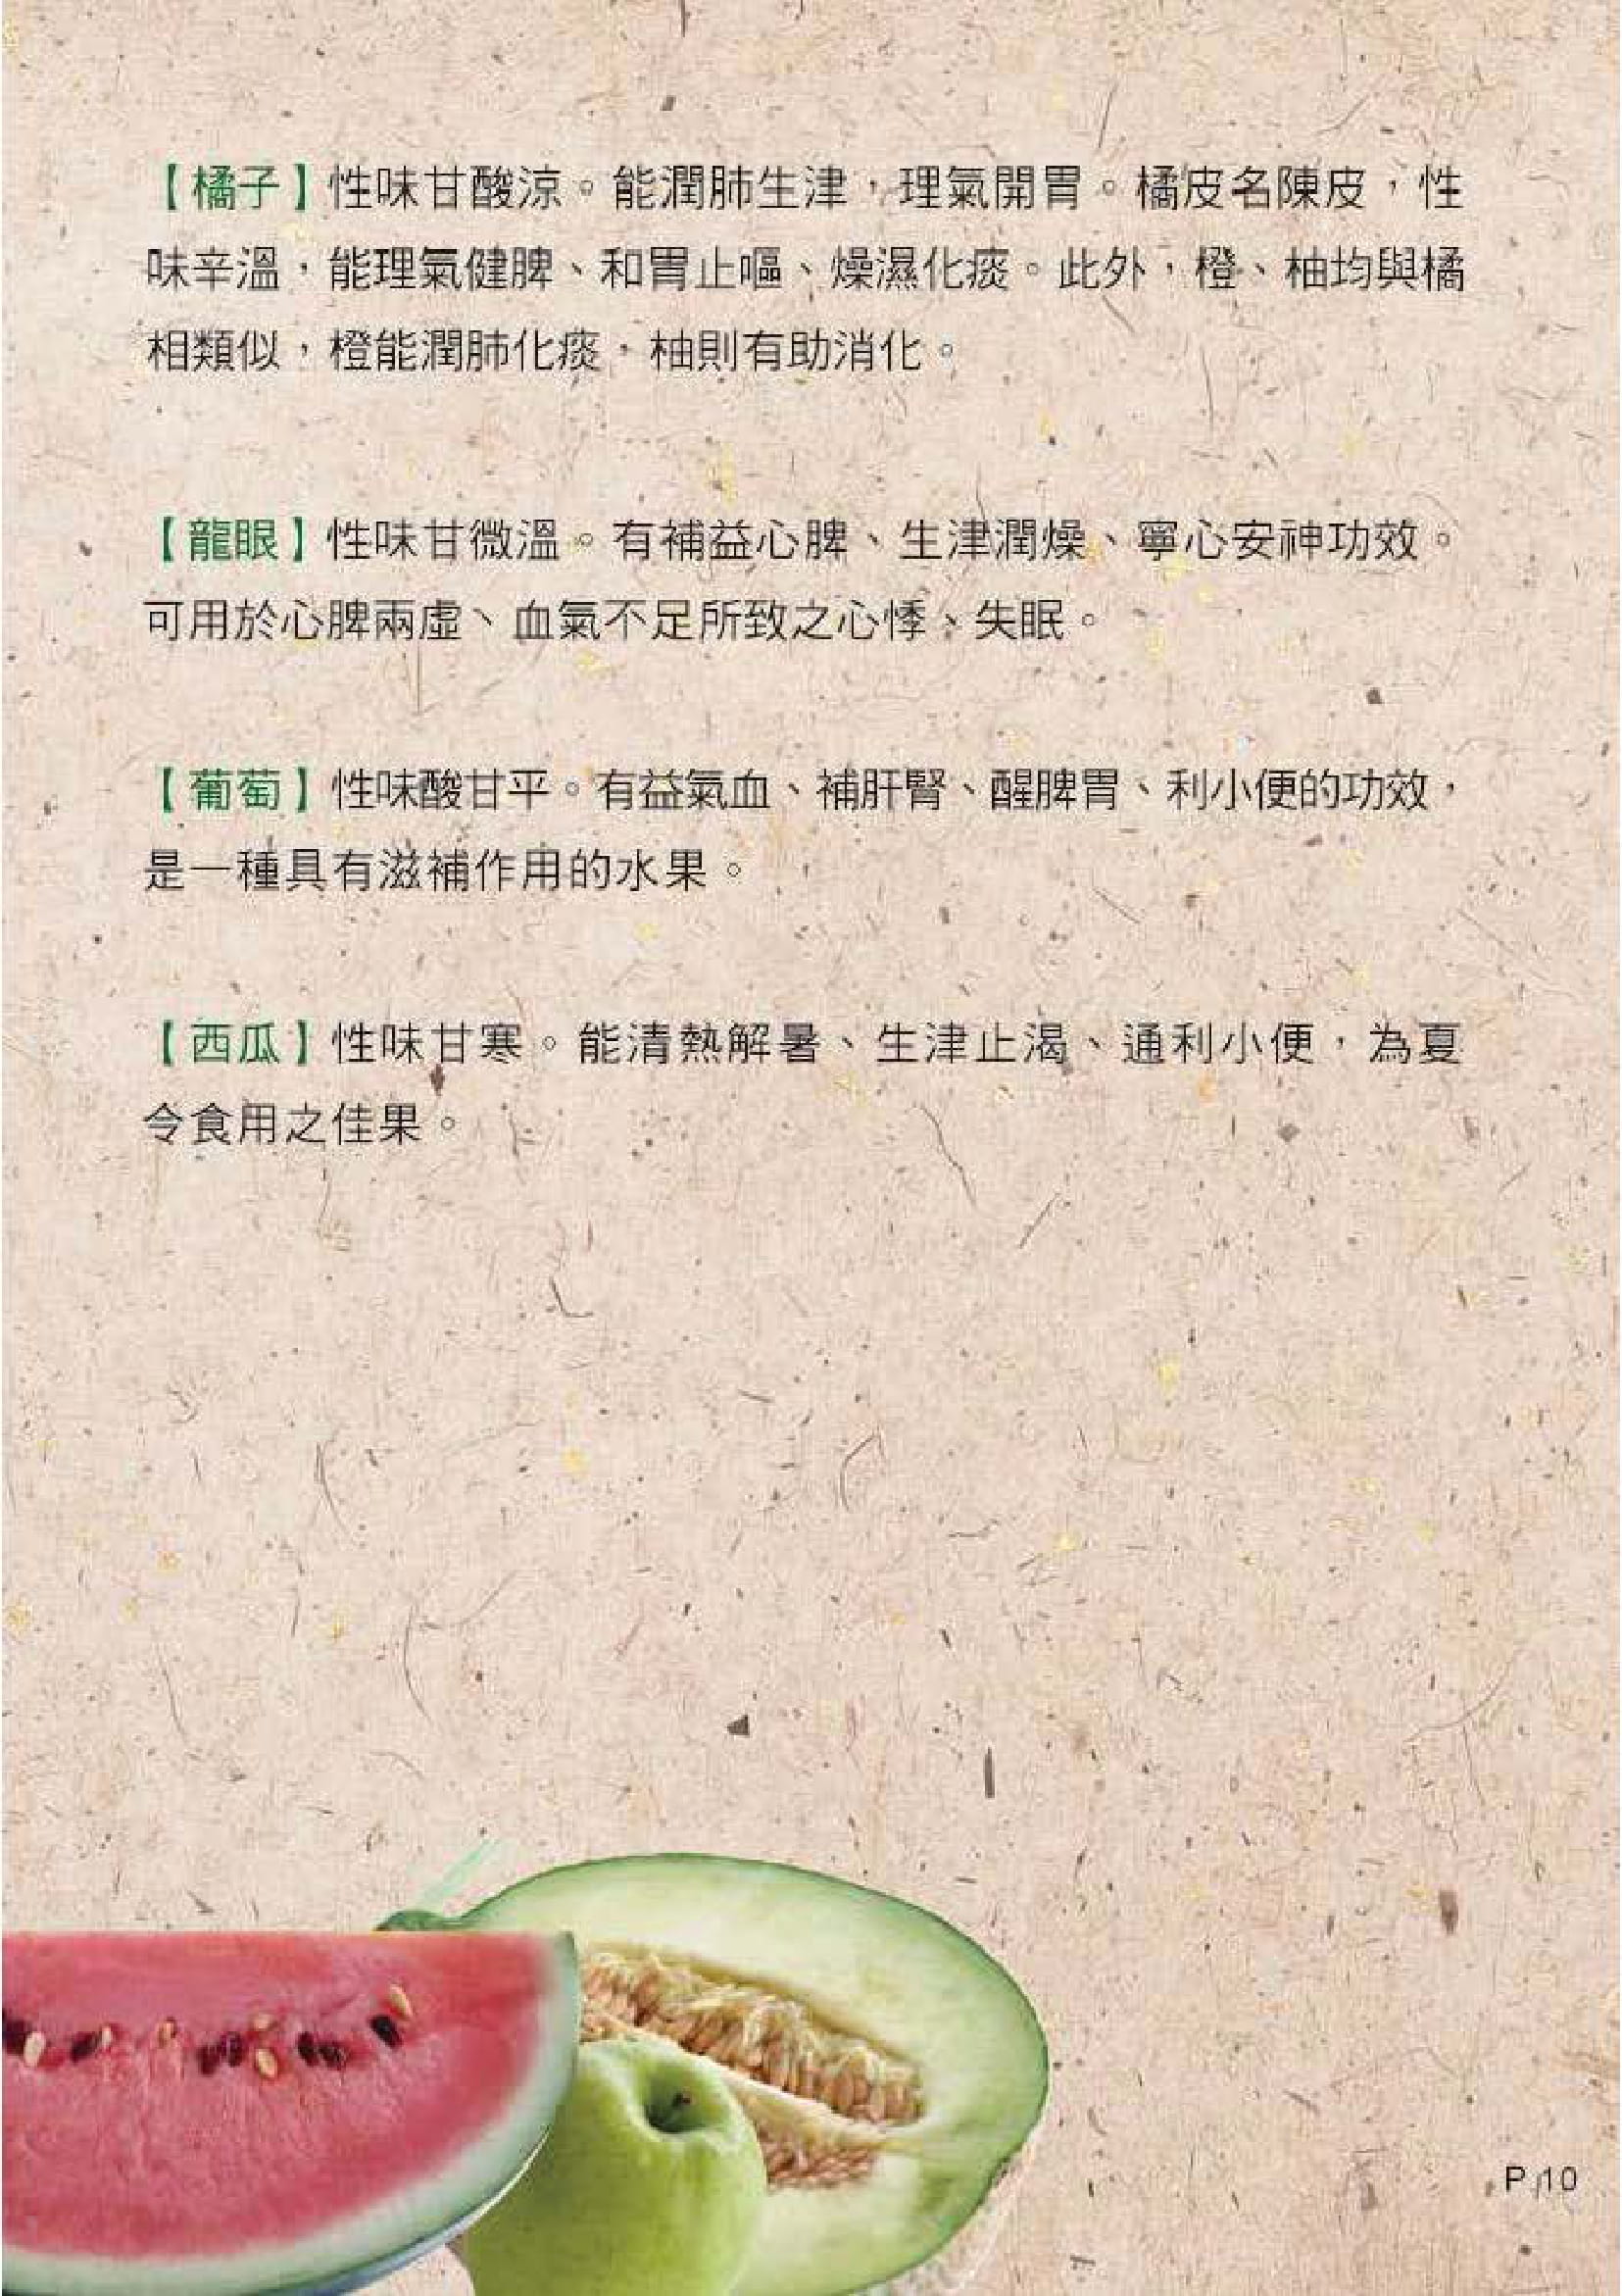 此图片展示《中医饮食养生 - 五谷与蔬果》刊物的第10页